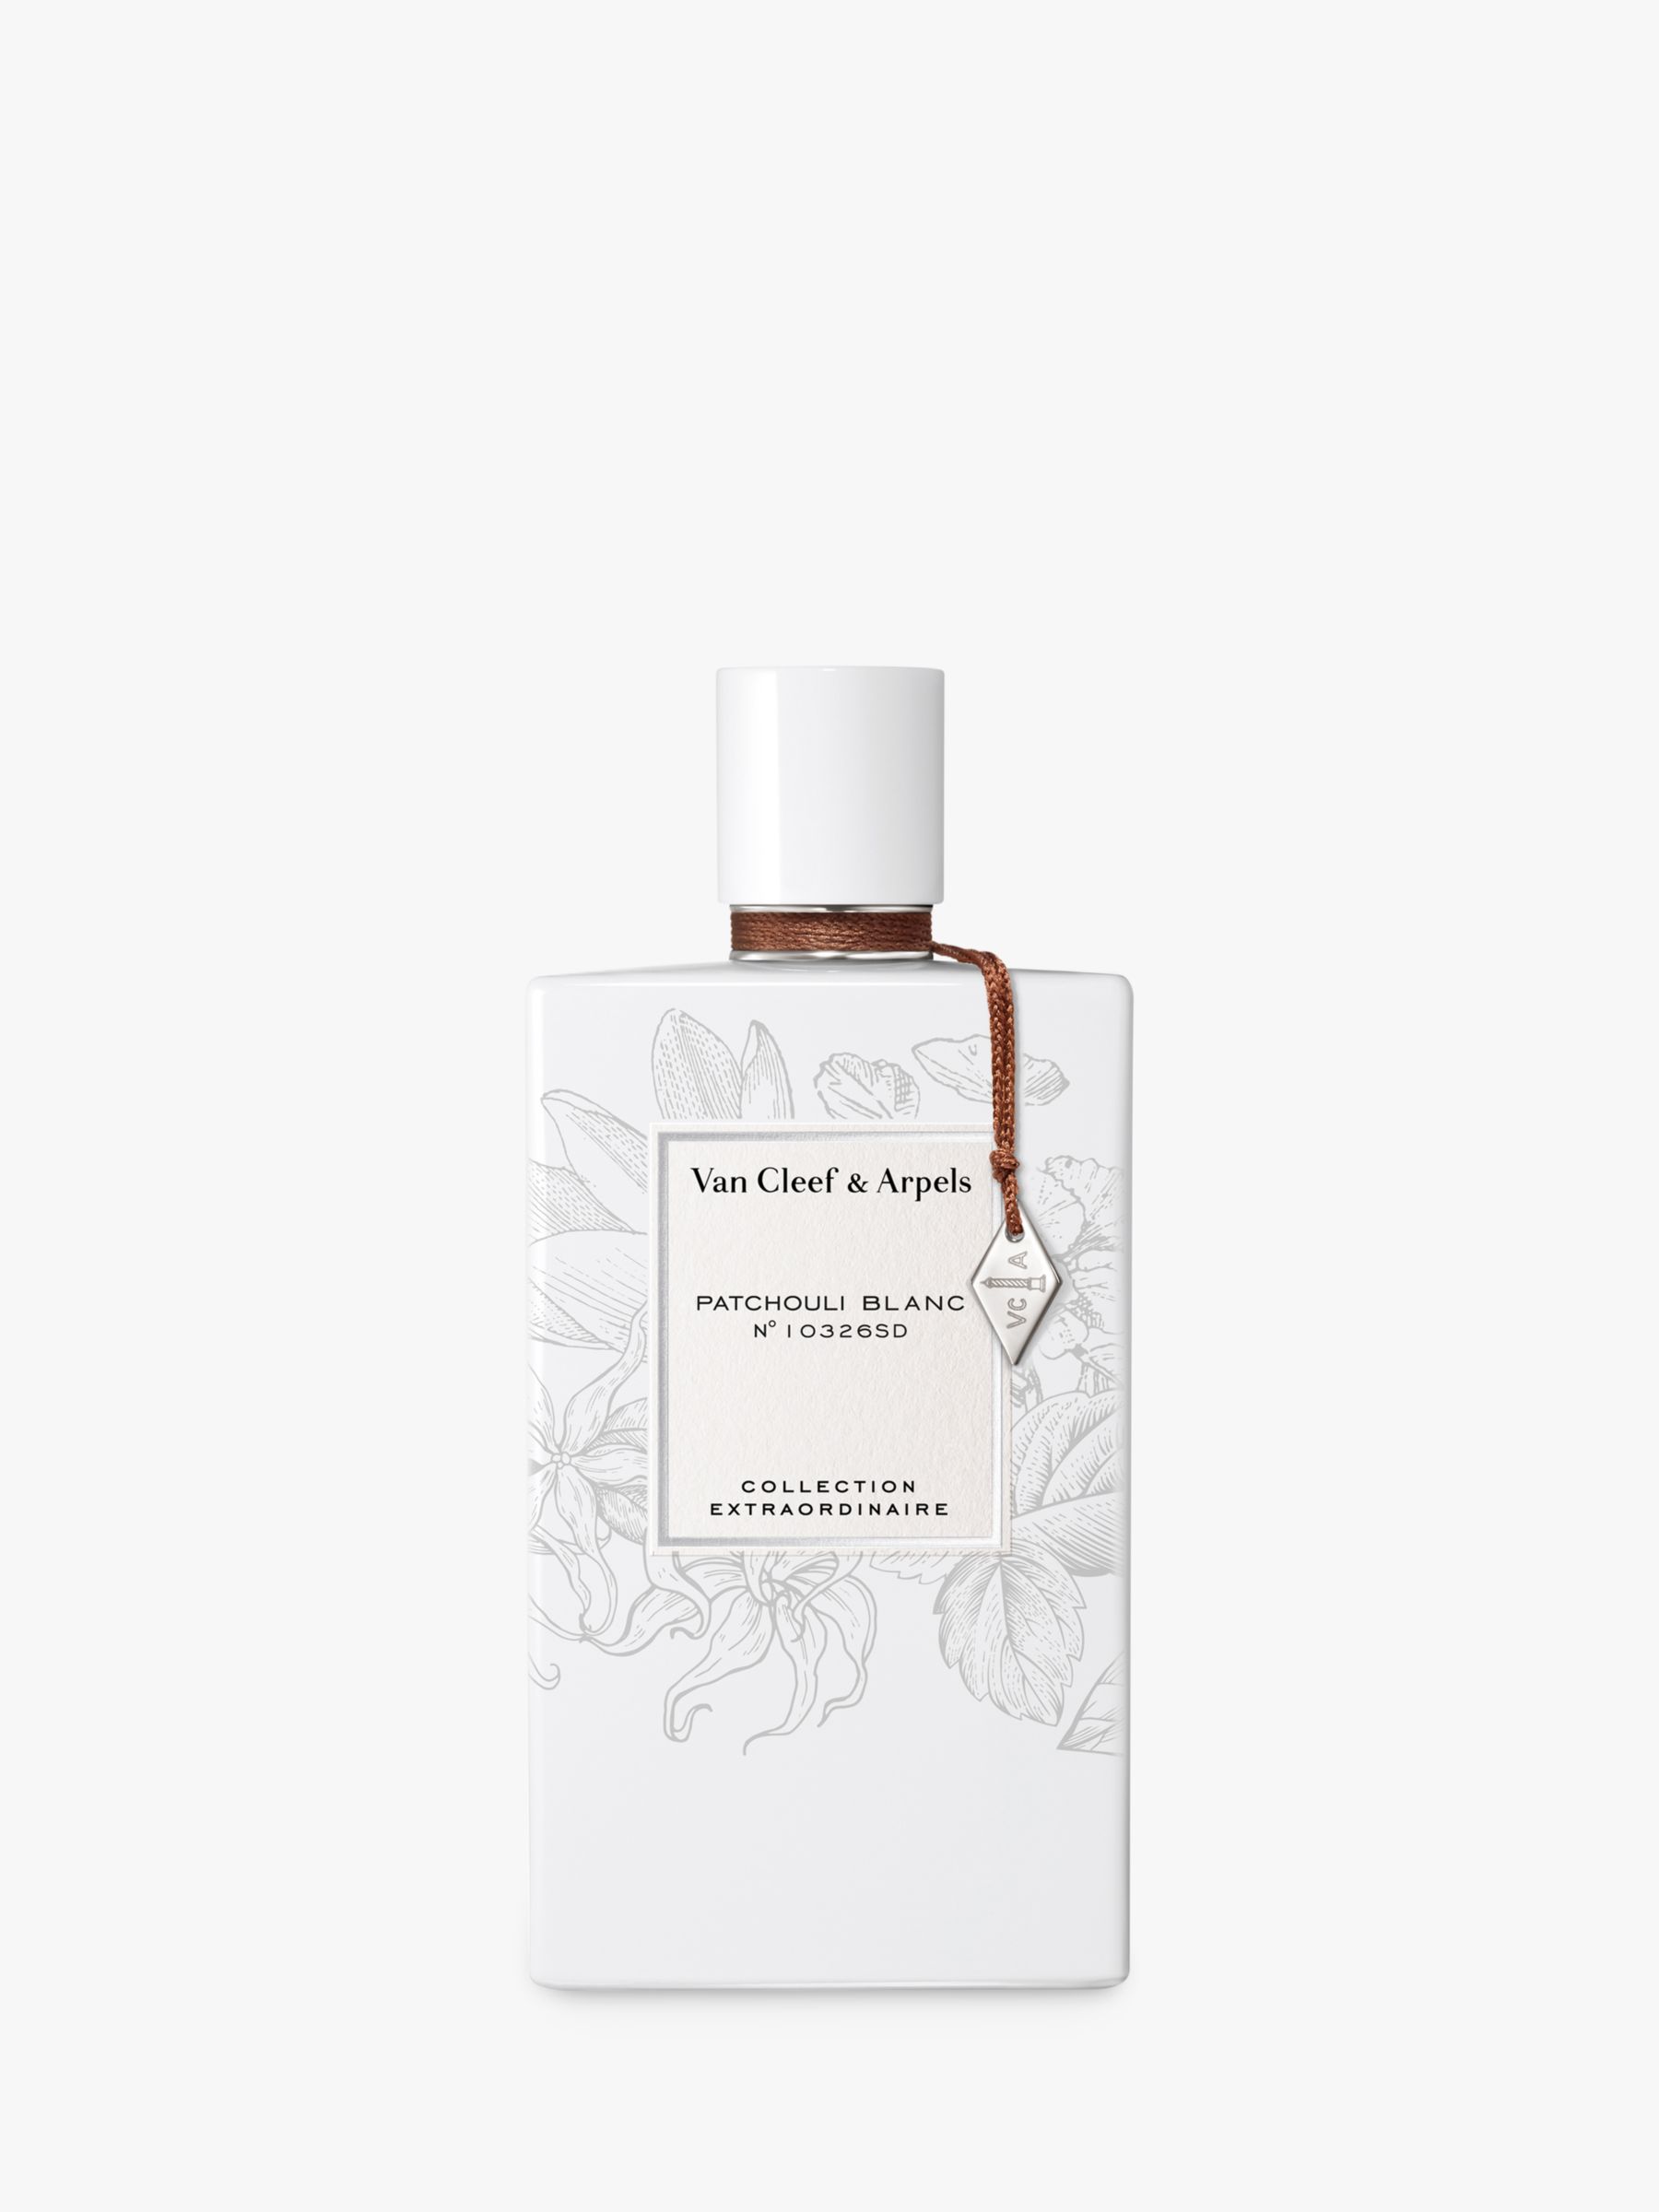 Van Cleef & Arpels Collection Extraordinaire Patchouli Blanc Eau de Parfum, 75ml 1